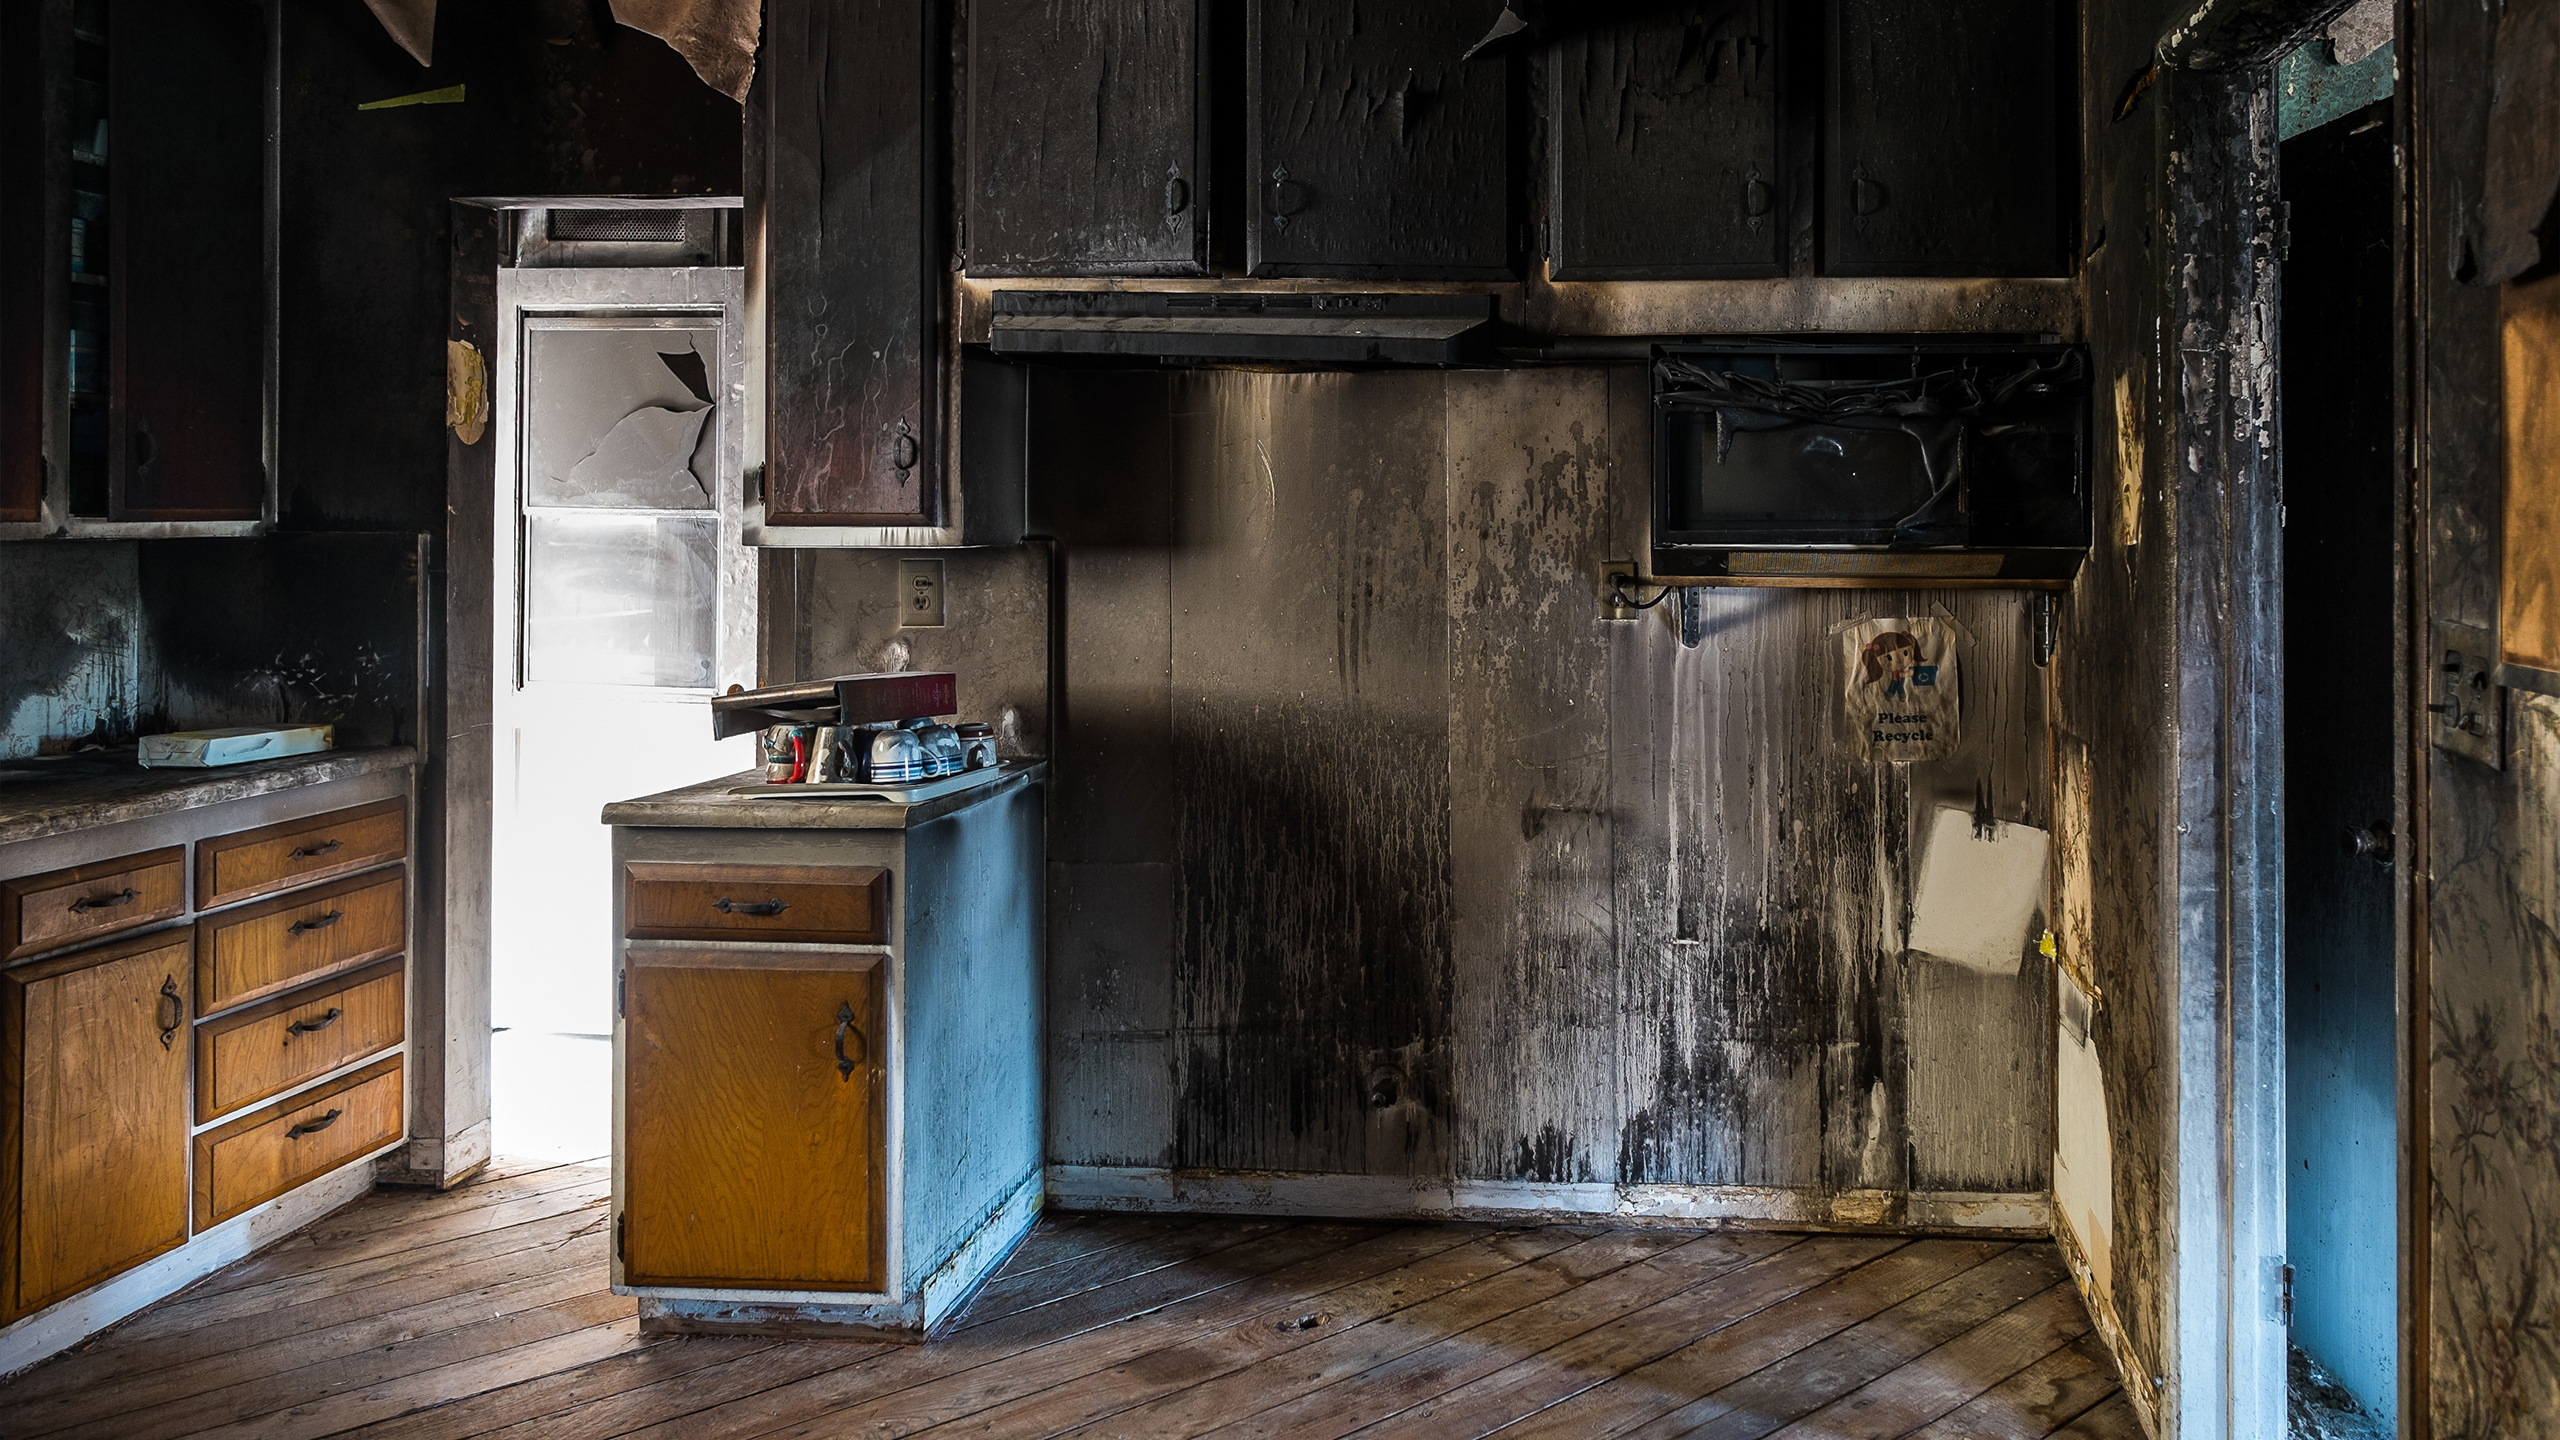 Мебель после пожара. Квартира после пожара. Дом после пожара. Кухня после пожара. Сгоревшая квартира внутри.